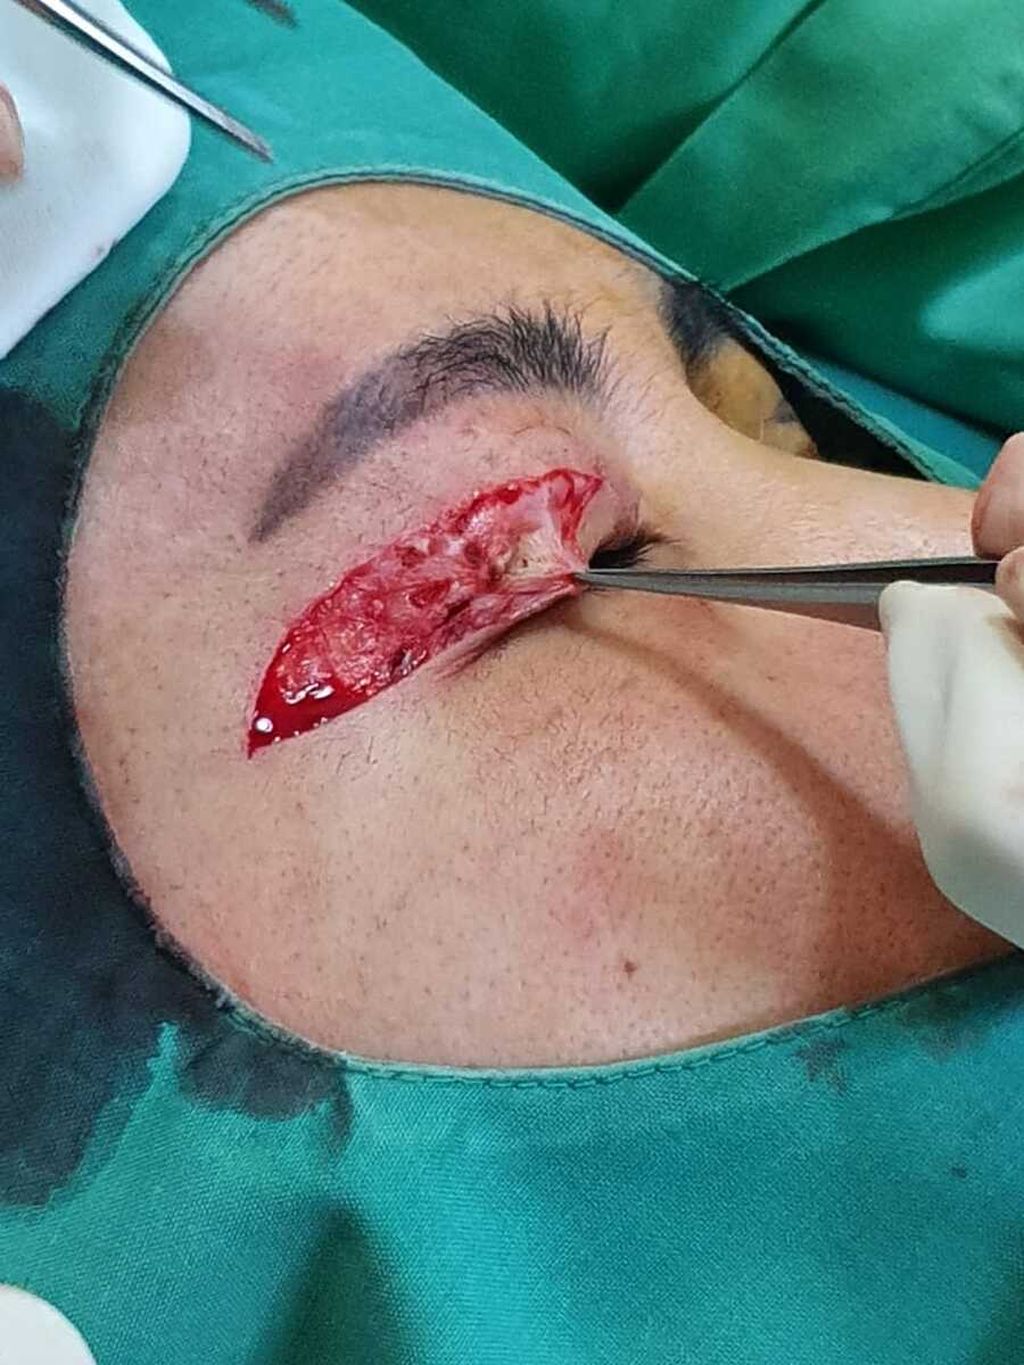 Dokumentasi operasi kelopak mata RA (35) yang dilakukan seorang dokter umum di rumahnya di daerah Ancol, Jakarta Utara, Desember 2020.